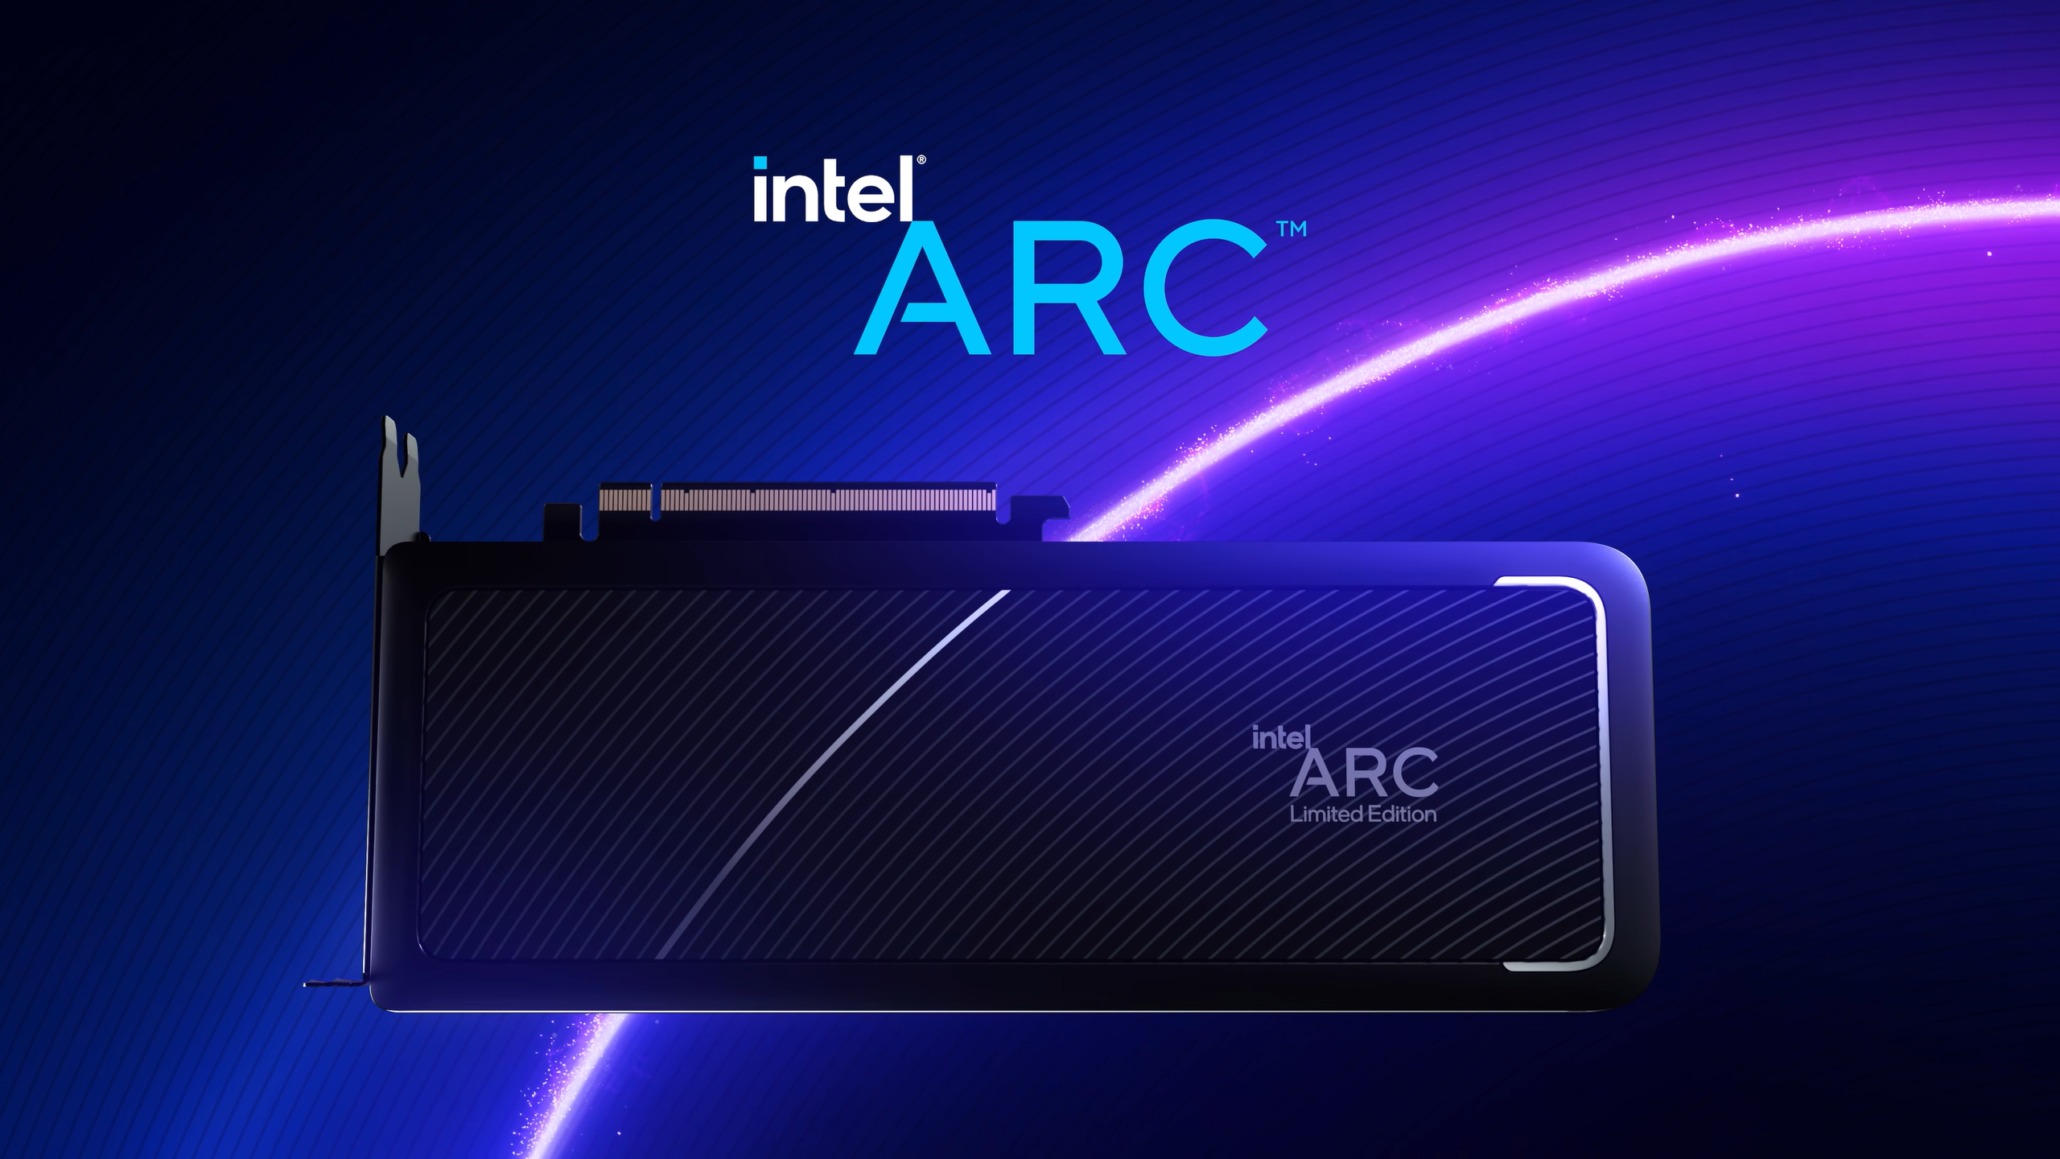 La référence GPU Intel Arc est comparable à RTX 2070